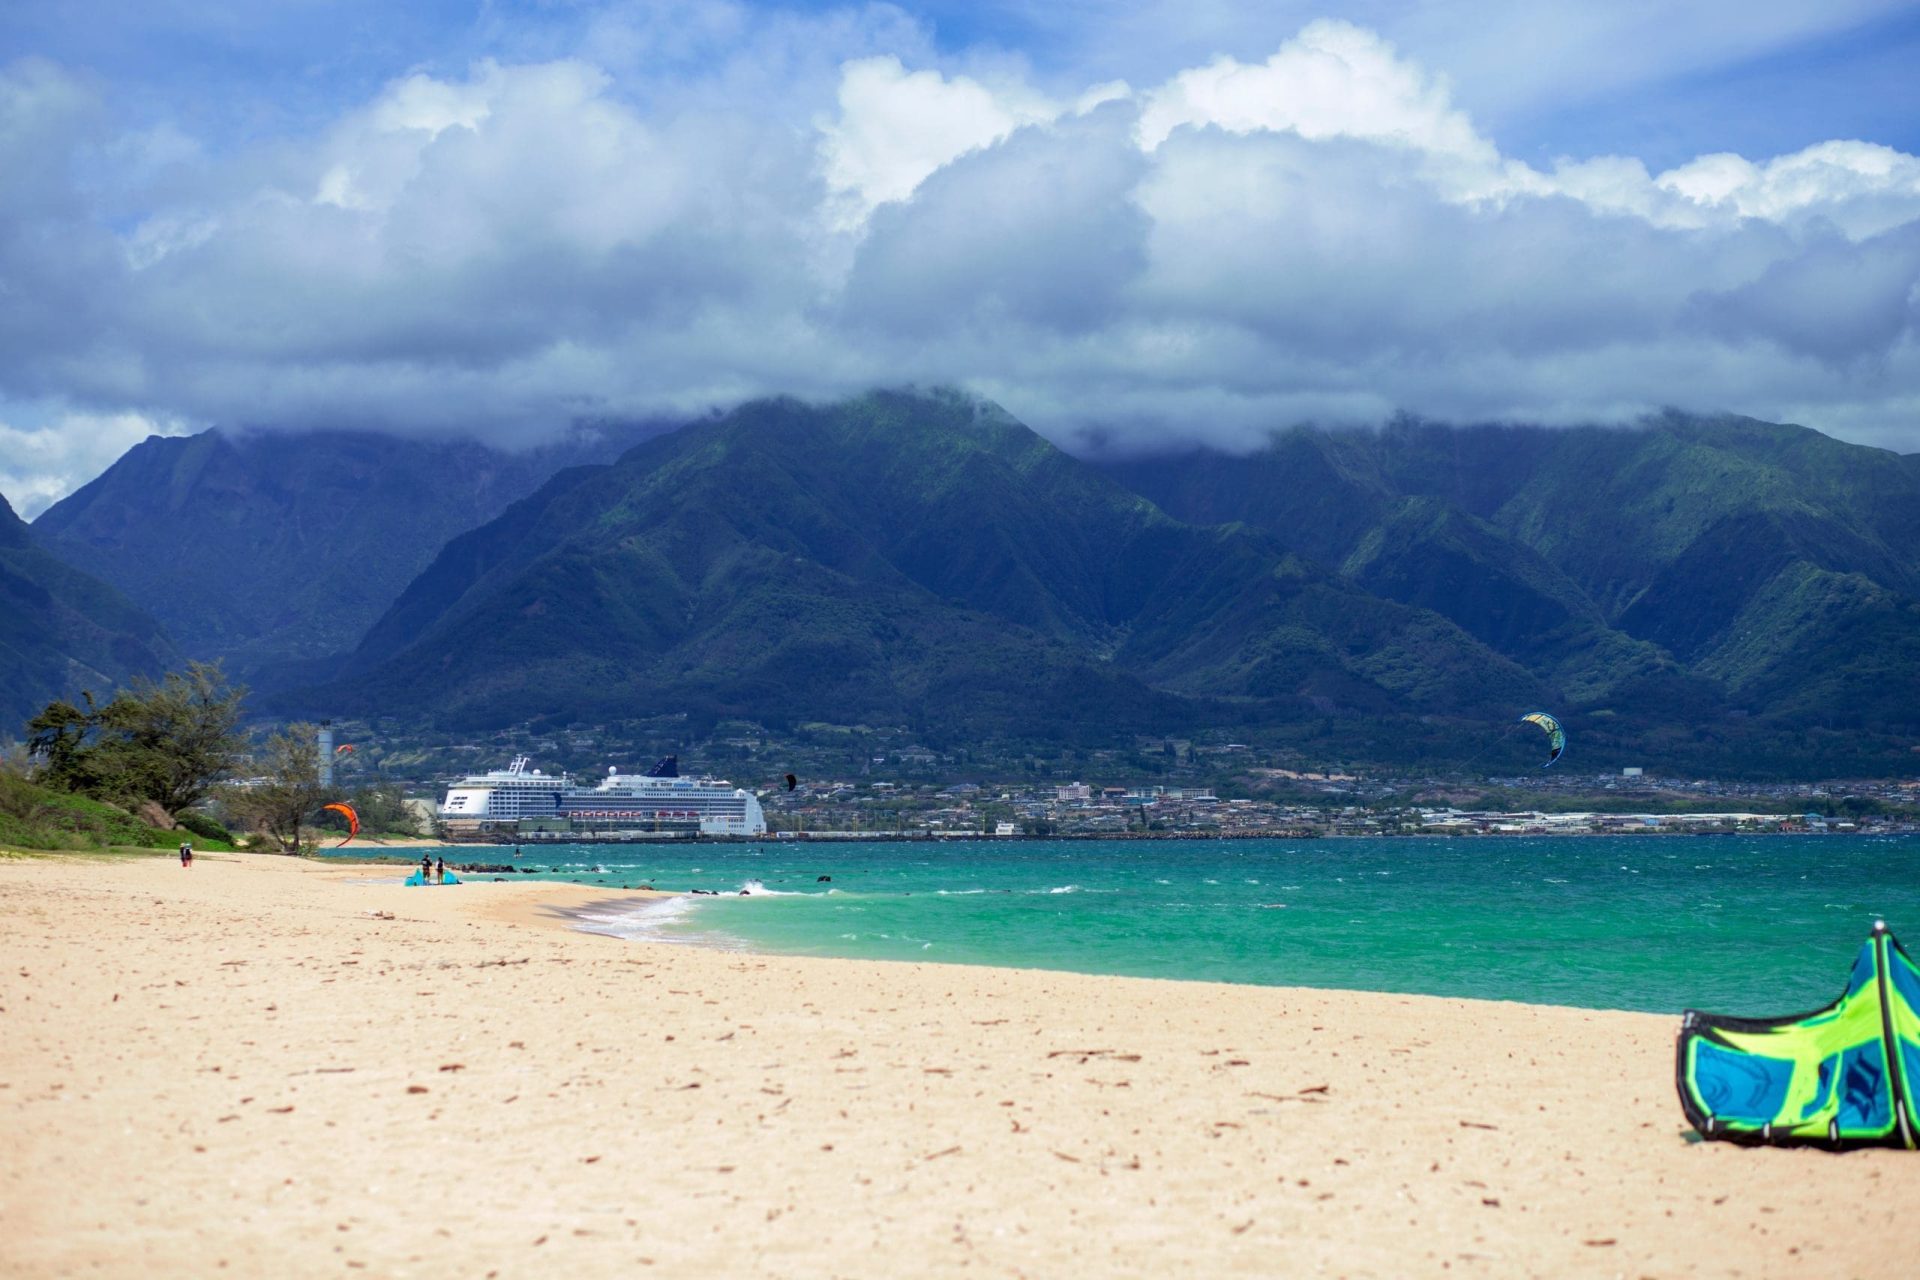 Do You Need a Car to Get Around Maui?